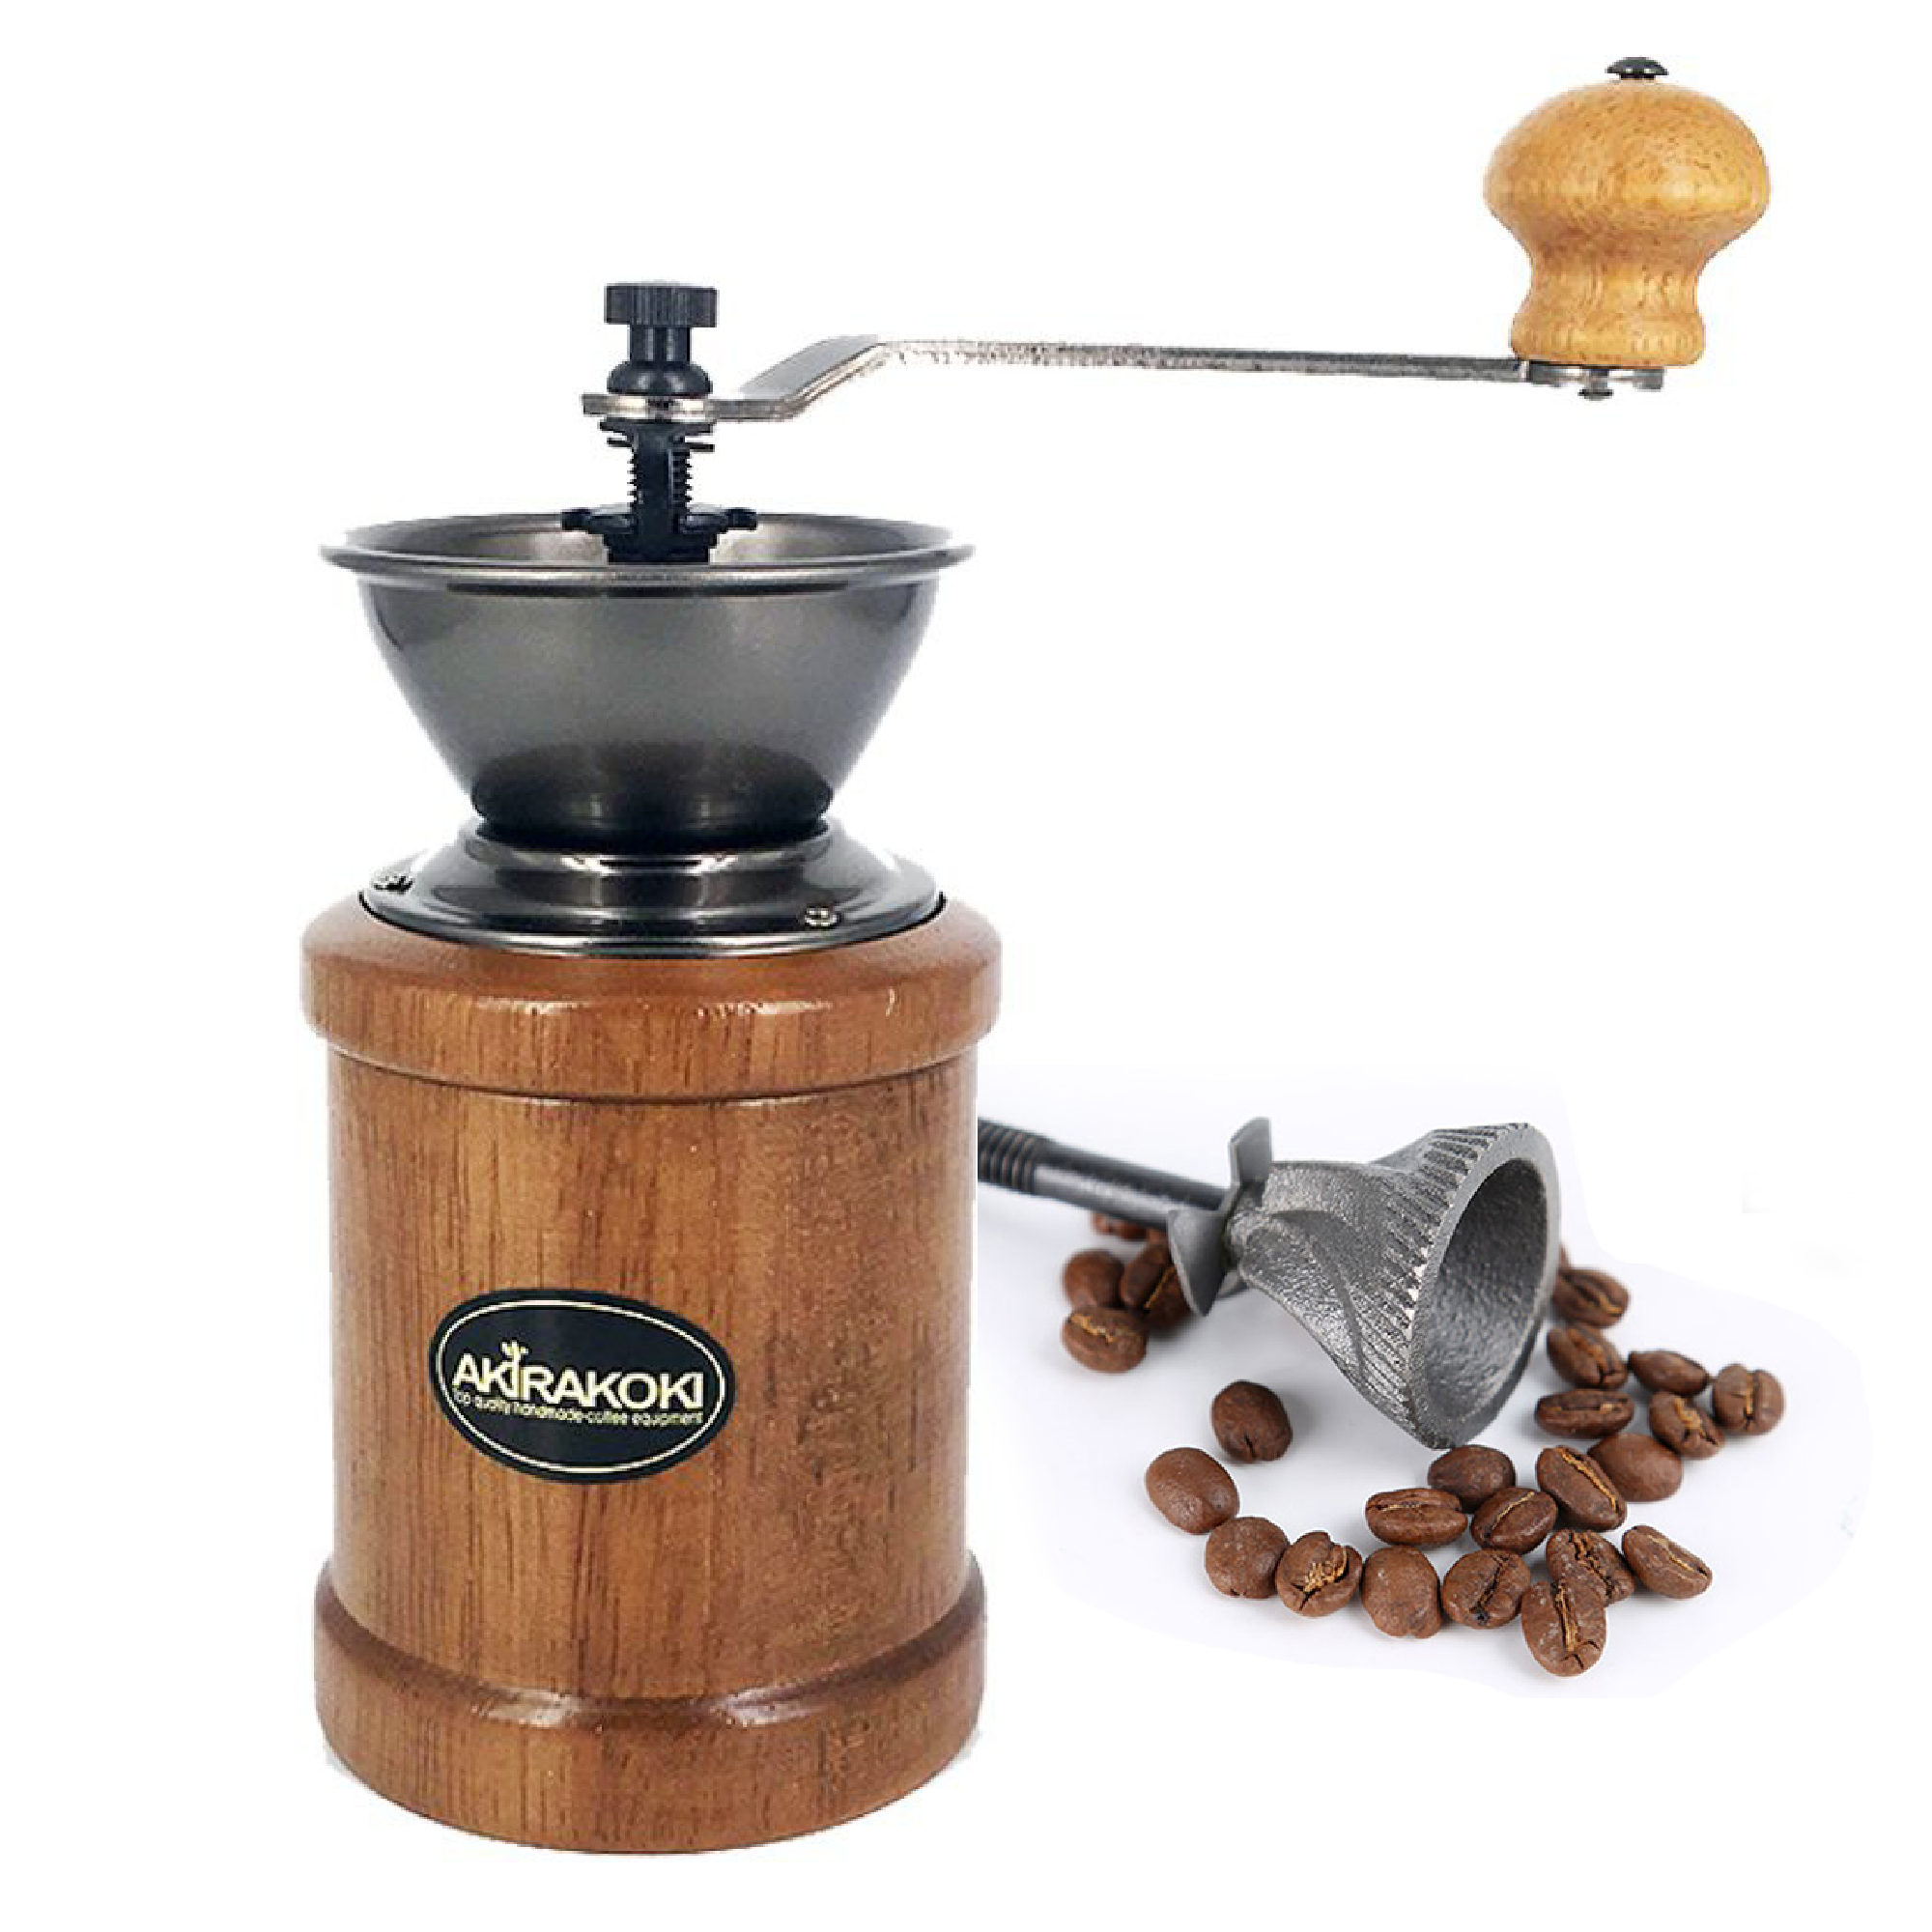 Buy Coffee bean grinder online